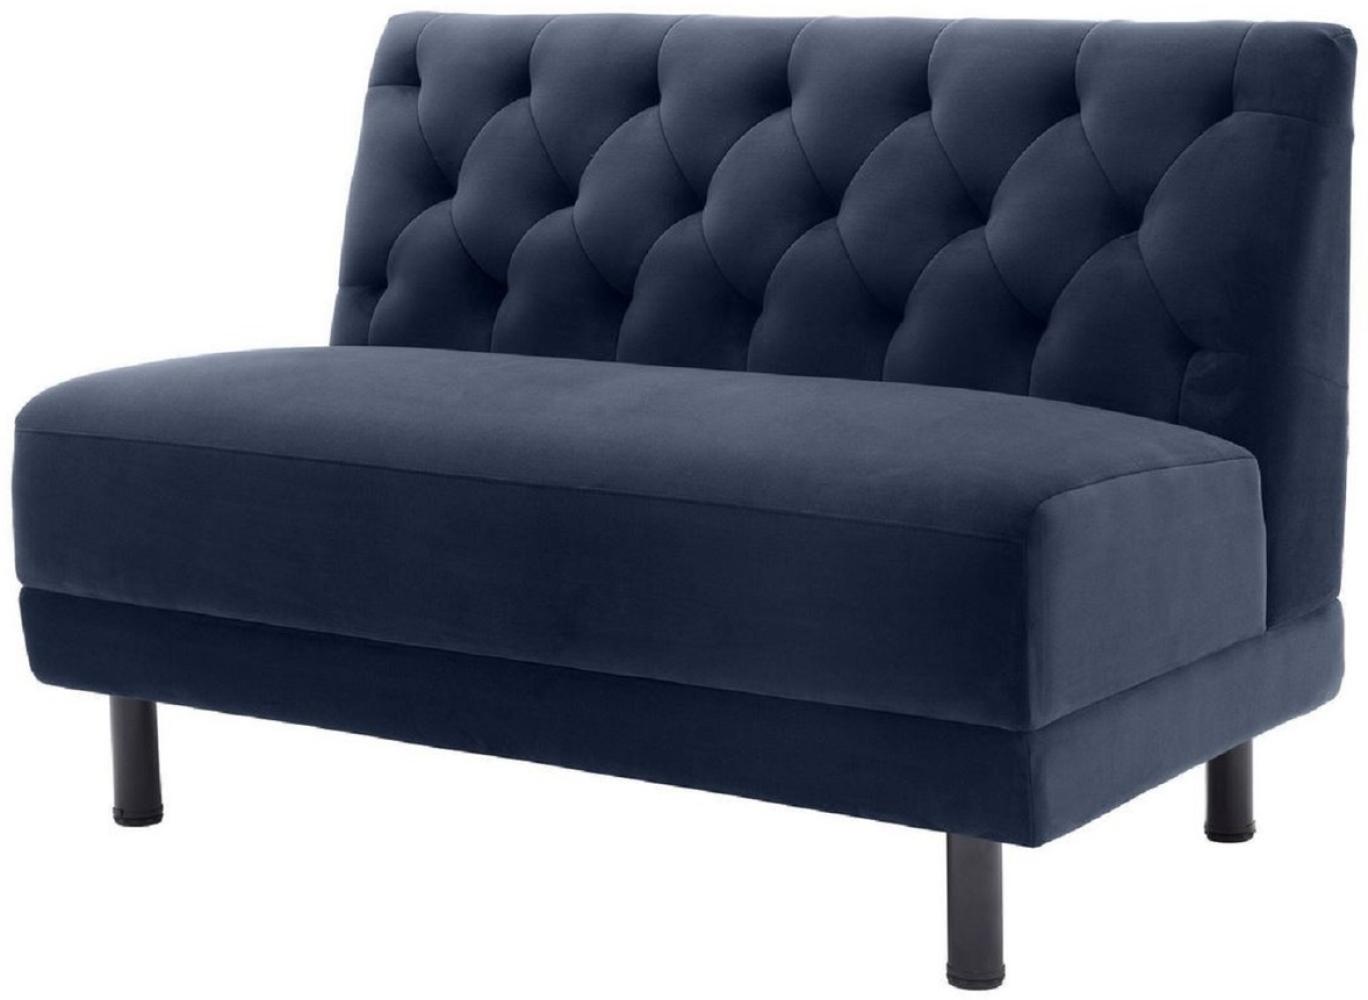 Casa Padrino Luxus Chesterfield Couch Mitternachtsblau / Schwarz 121 x 75 x H. 85 cm Bild 1